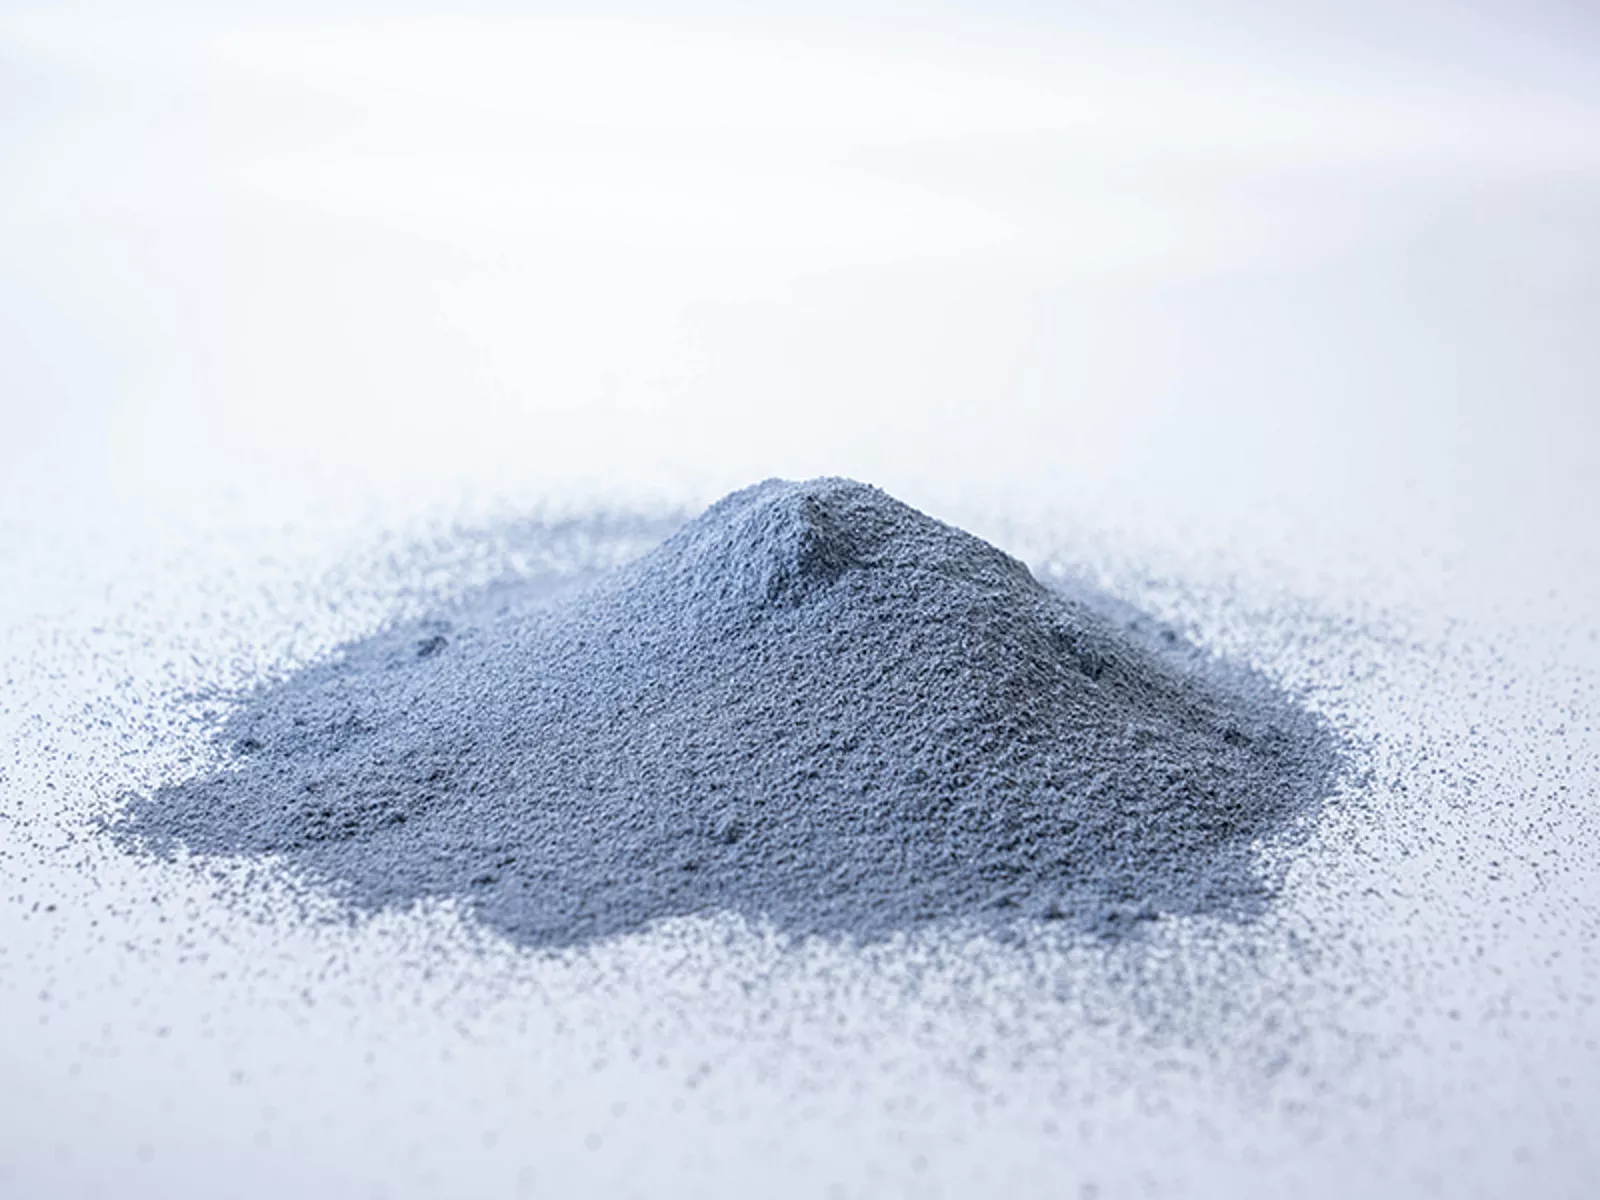 W-MMC metal powder